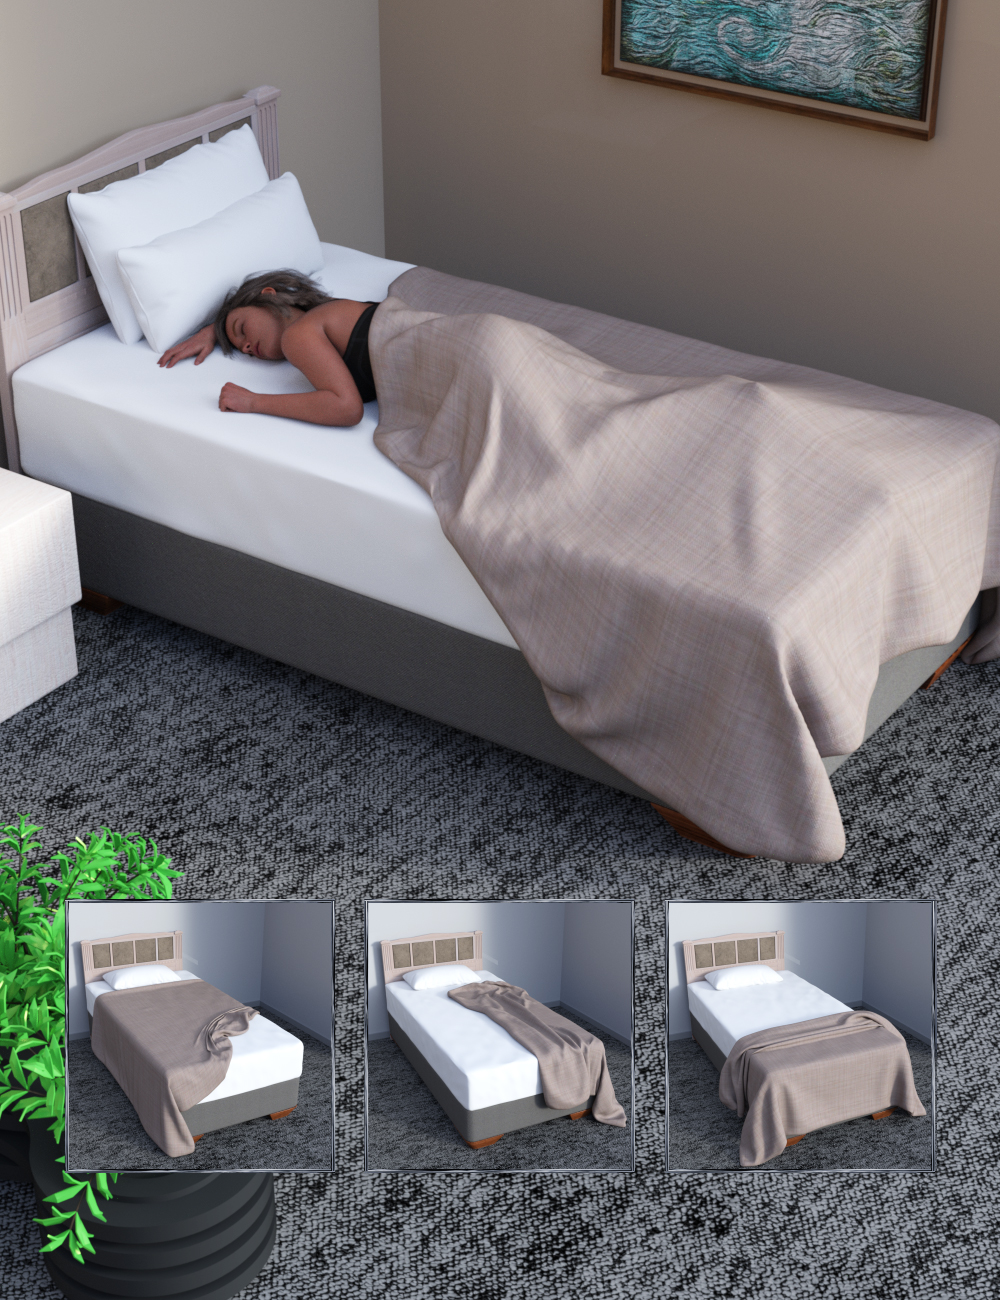 JW My Bed Prop by: JWolf, 3D Models by Daz 3D